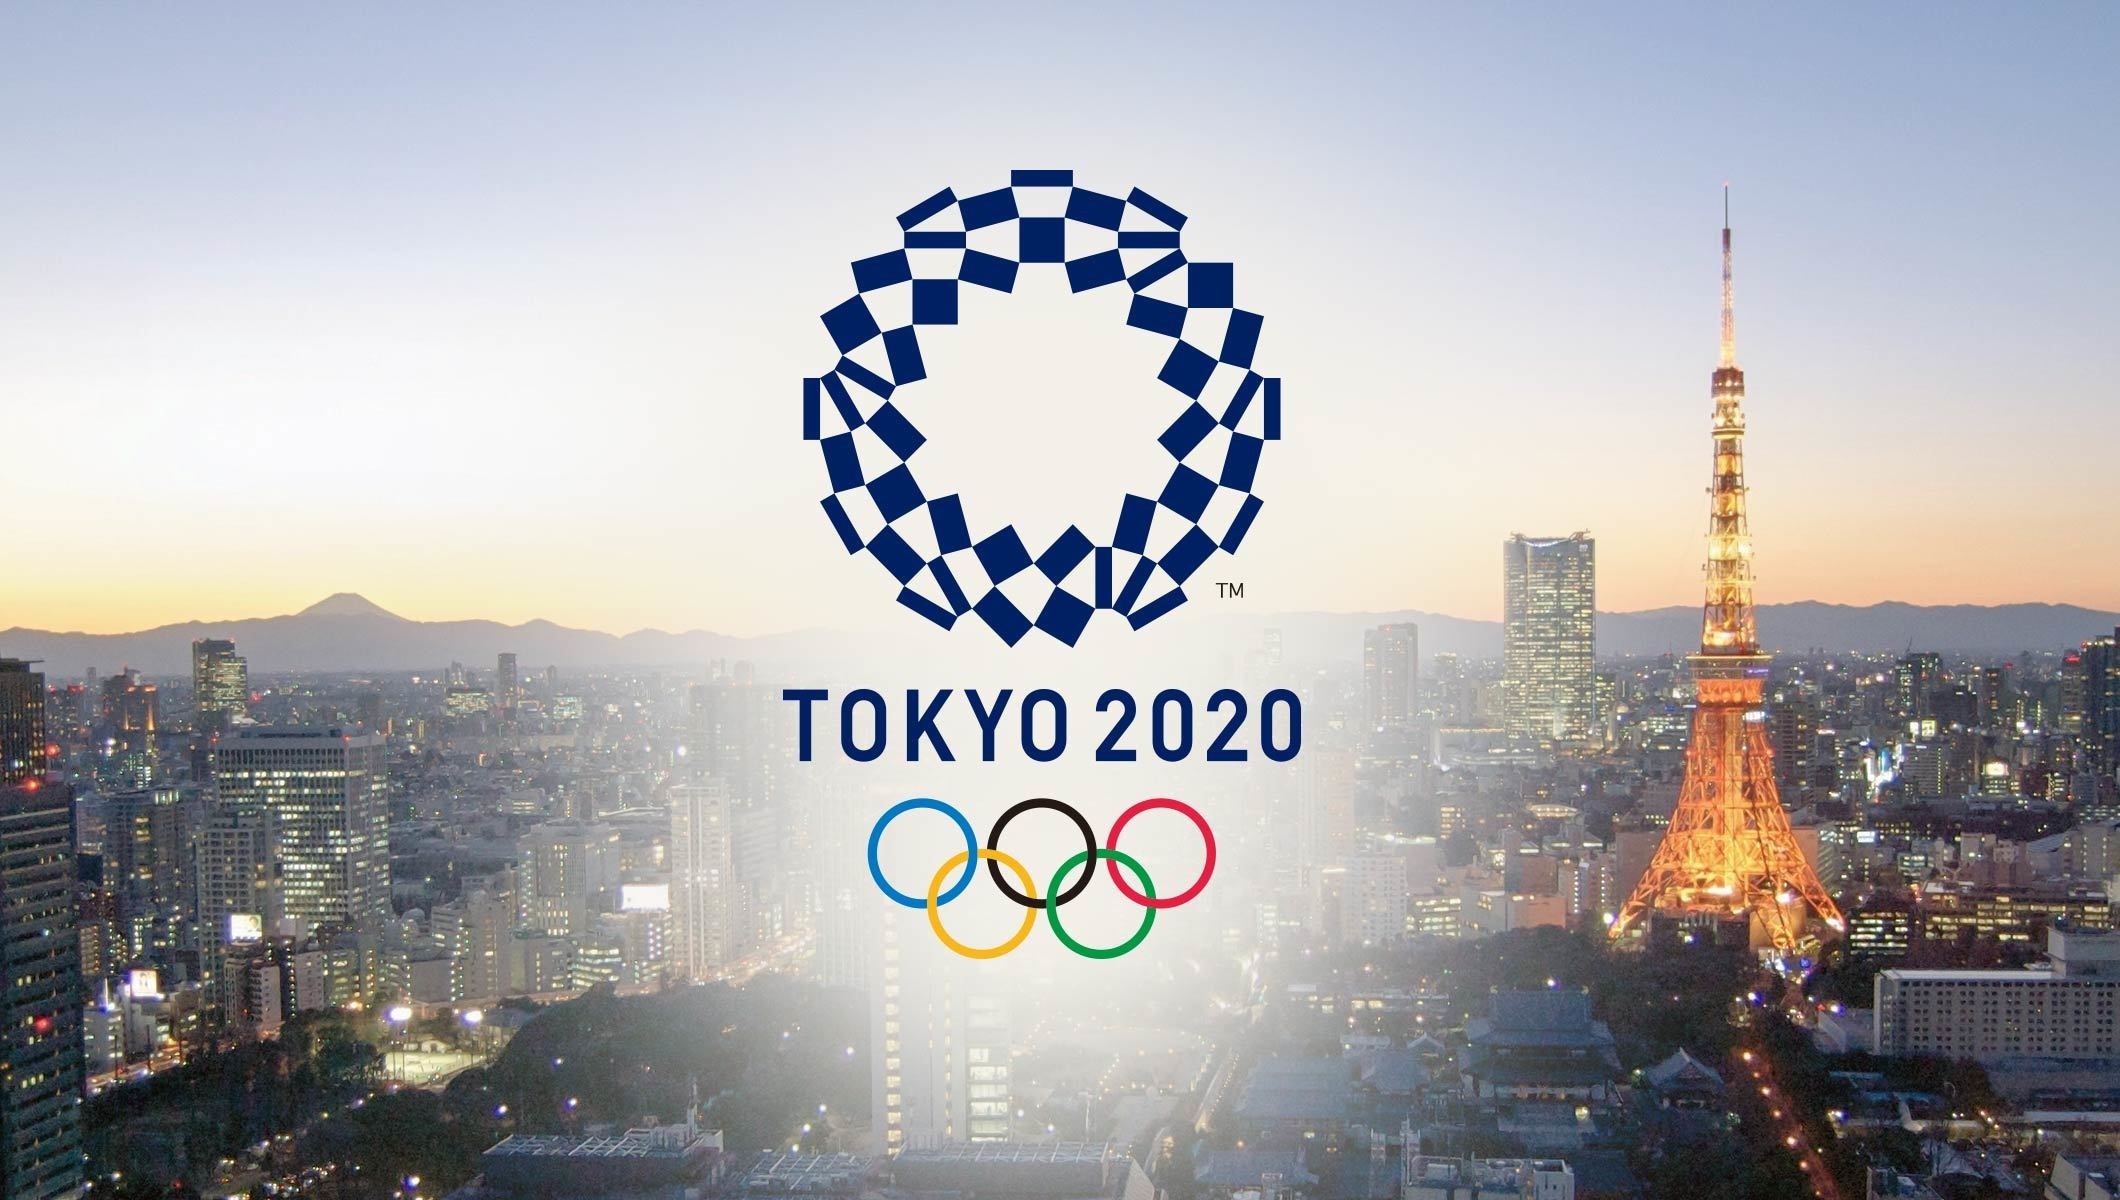   تعرّف على مواعيد لقاءات أولمبياد طوكيو 2020